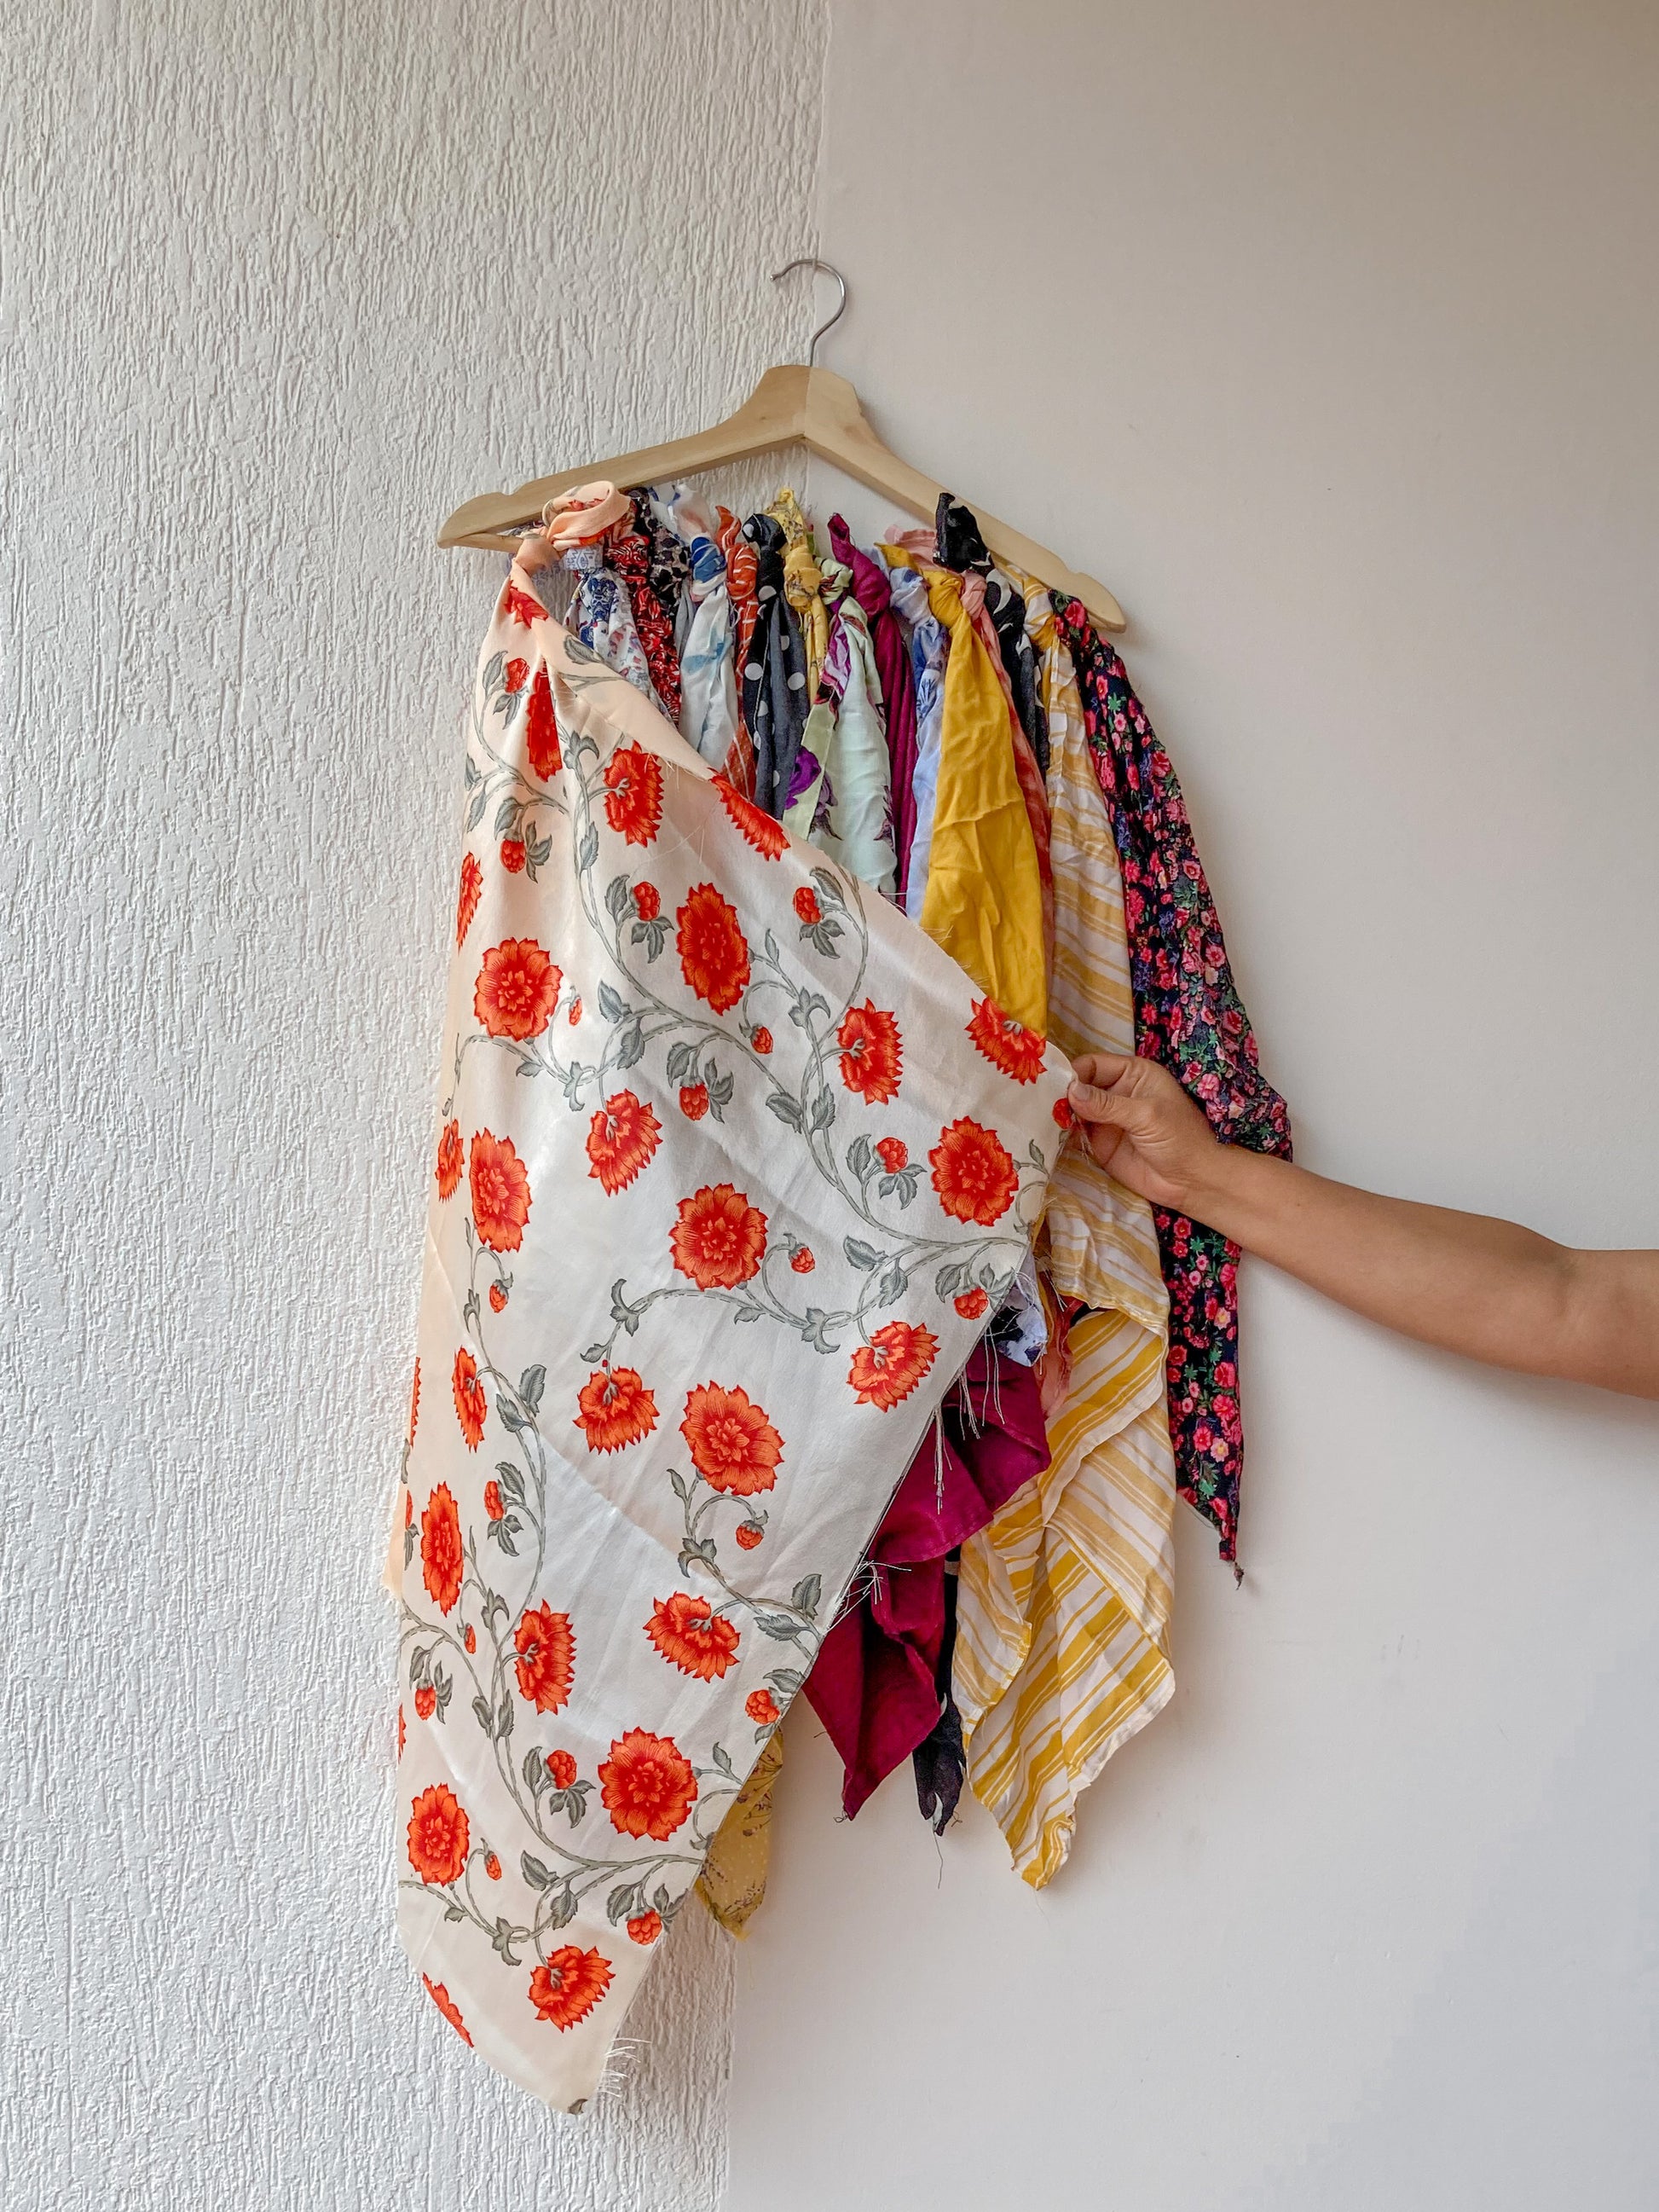 Bandana en seda turca con flores naranjas para el cabello, amarrar a la cintura, amarrar en el bolso. accesorios conscientes hechos con los sobrantes de la producción.